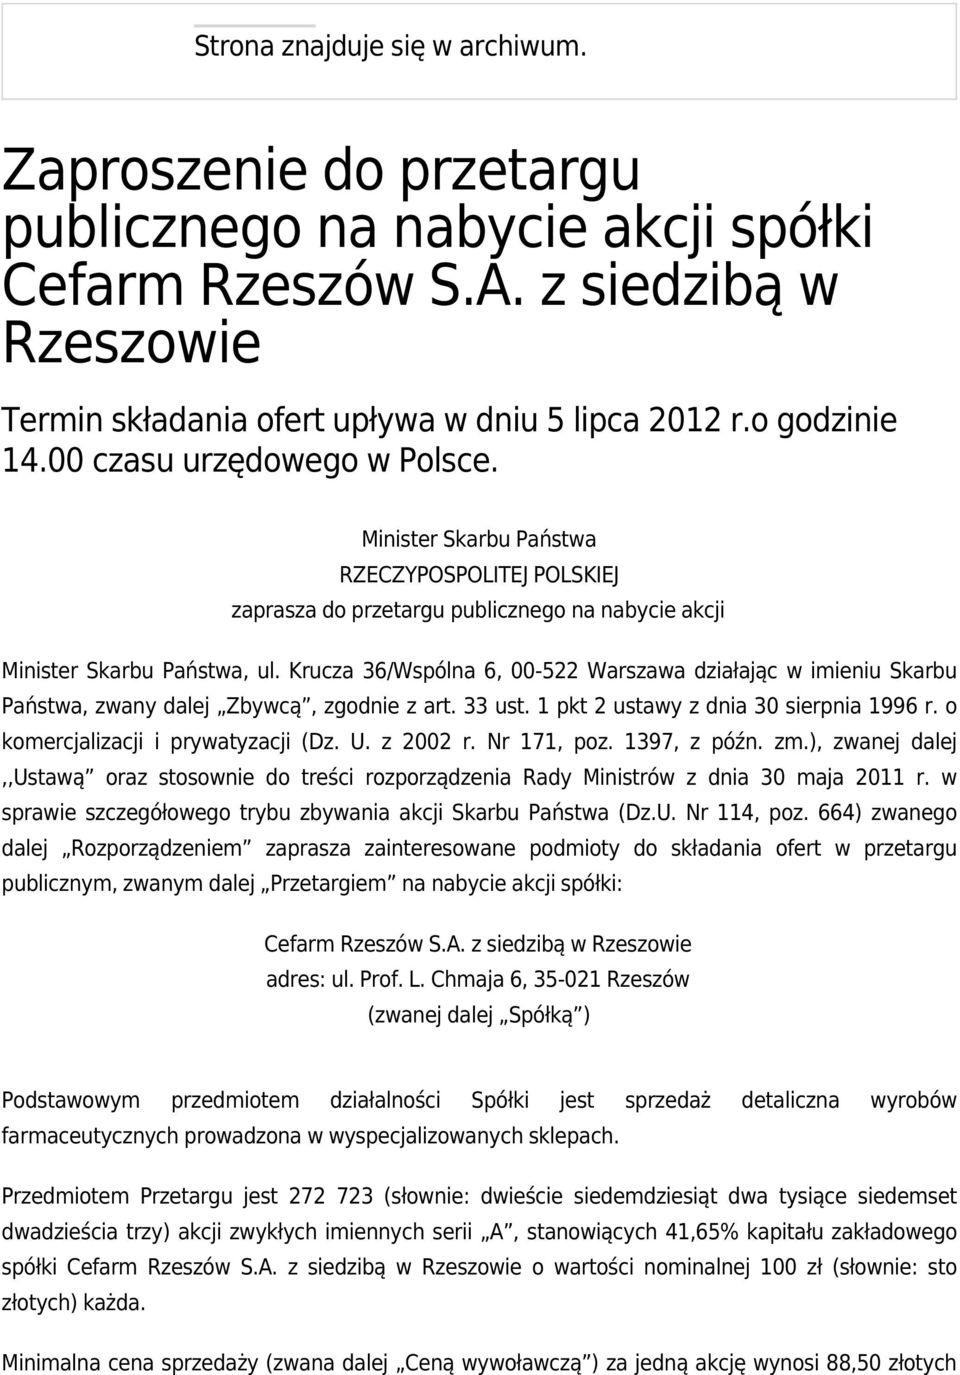 Krucza 36/Wspólna 6, 00-522 Warszawa działając w imieniu Skarbu Państwa, zwany dalej Zbywcą, zgodnie z art. 33 ust. 1 pkt 2 ustawy z dnia 30 sierpnia 1996 r. o komercjalizacji i prywatyzacji (Dz. U.